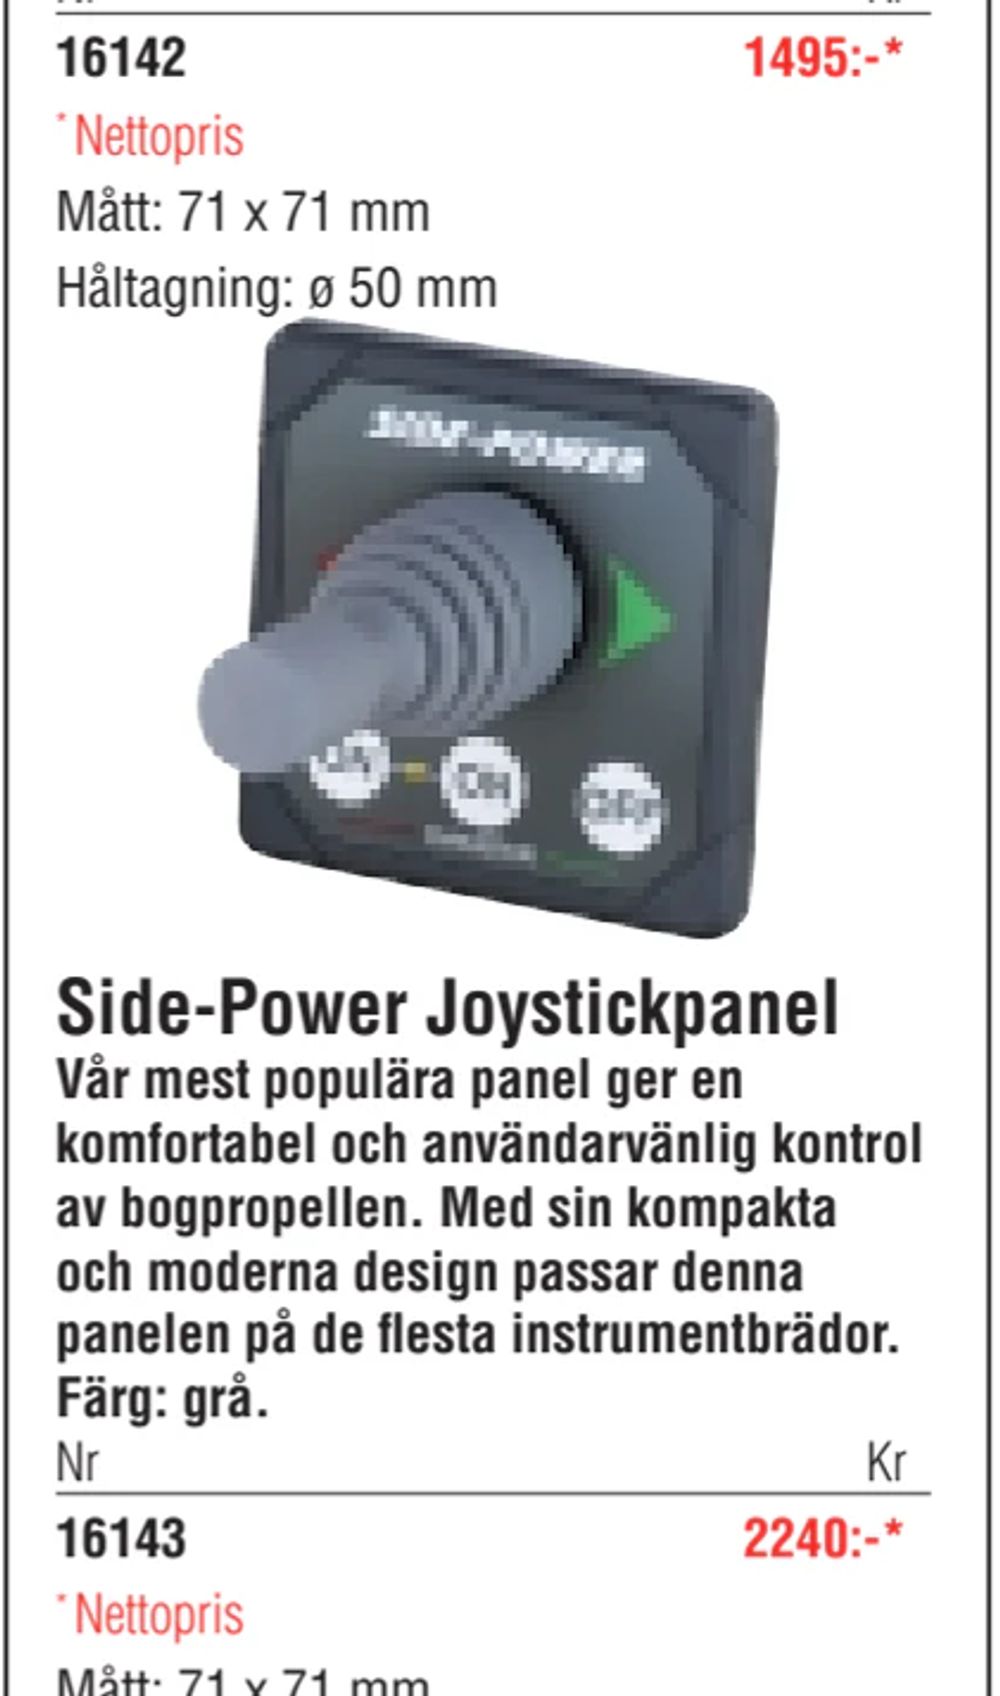 Erbjudanden på Side-Power Joystickpanel från Erlandsons Brygga för 2 240 kr